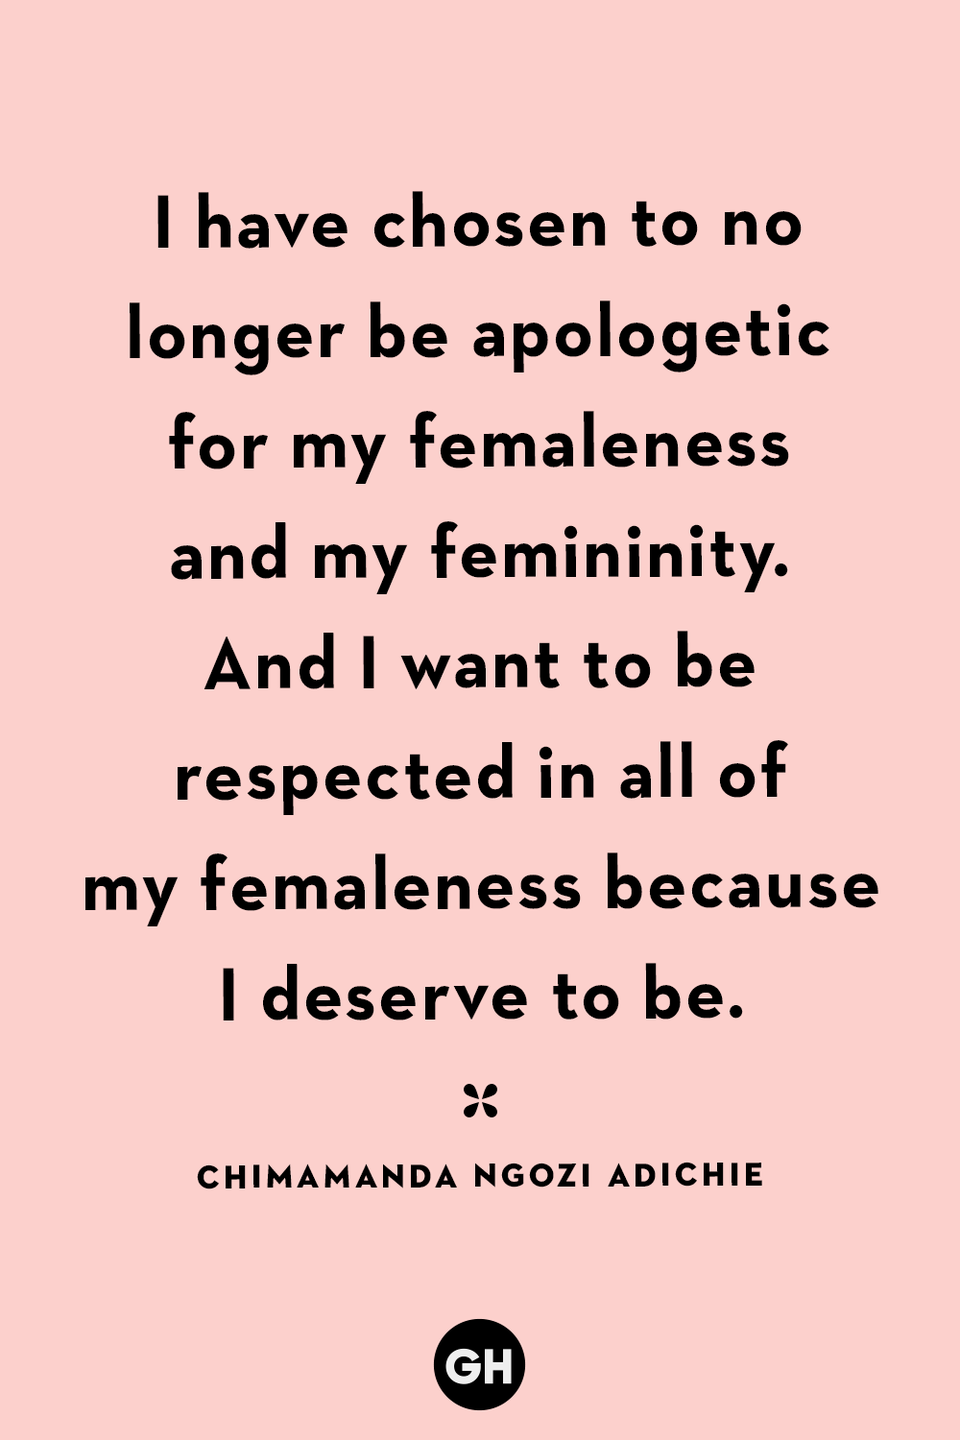 15) Chimamanda Ngozi Adichie